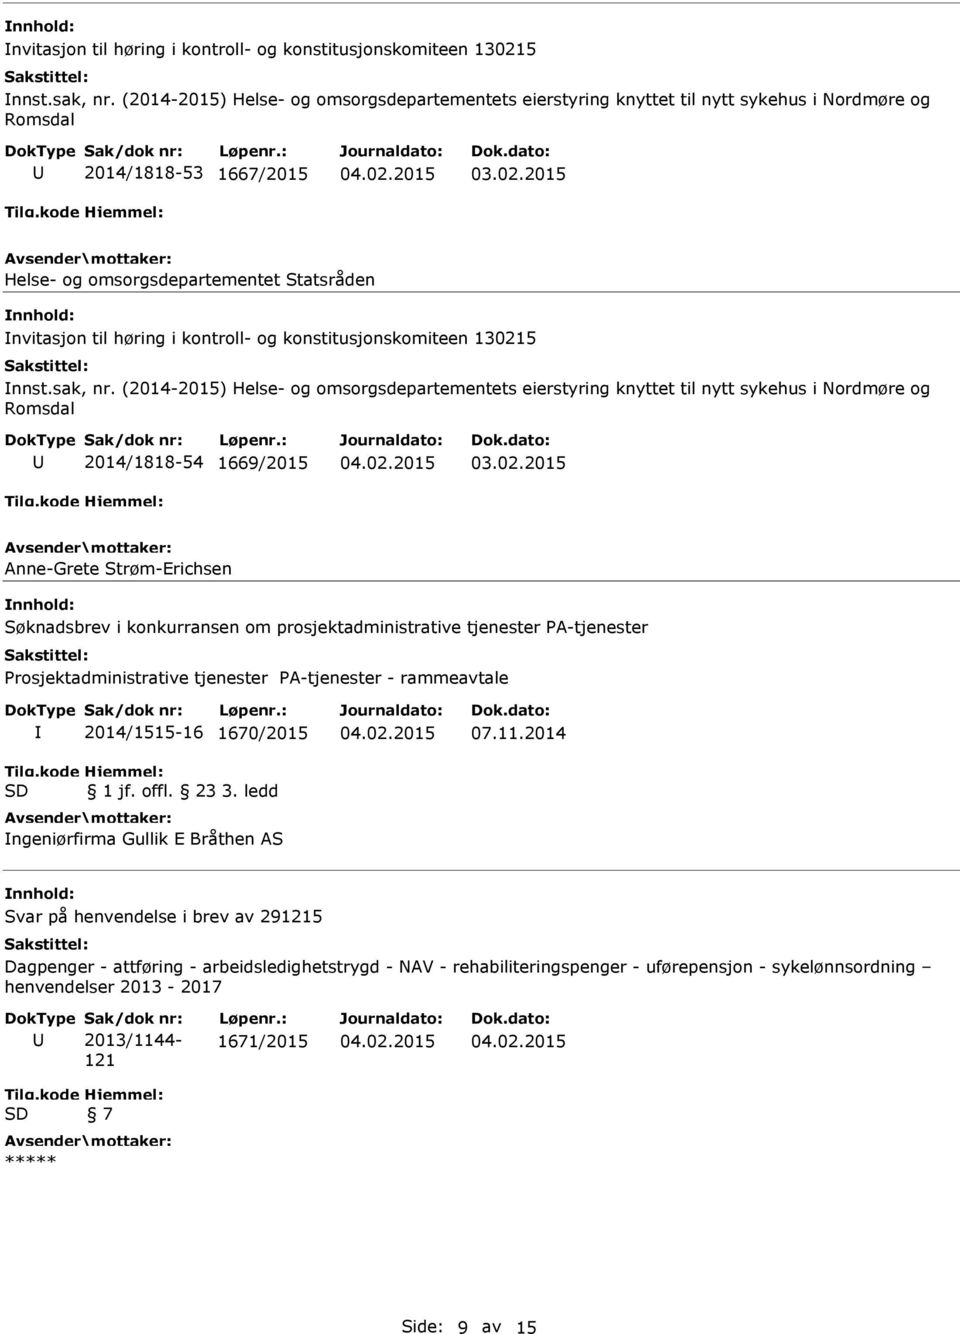 omsorgsdepartementets eierstyring knyttet til nytt sykehus i Nordmøre og 2014/1818-54 1669/2015 Anne-Grete Strøm-Erichsen 2014/1515-16 1670/2015 ngeniørfirma Gullik E Bråthen AS 07.11.